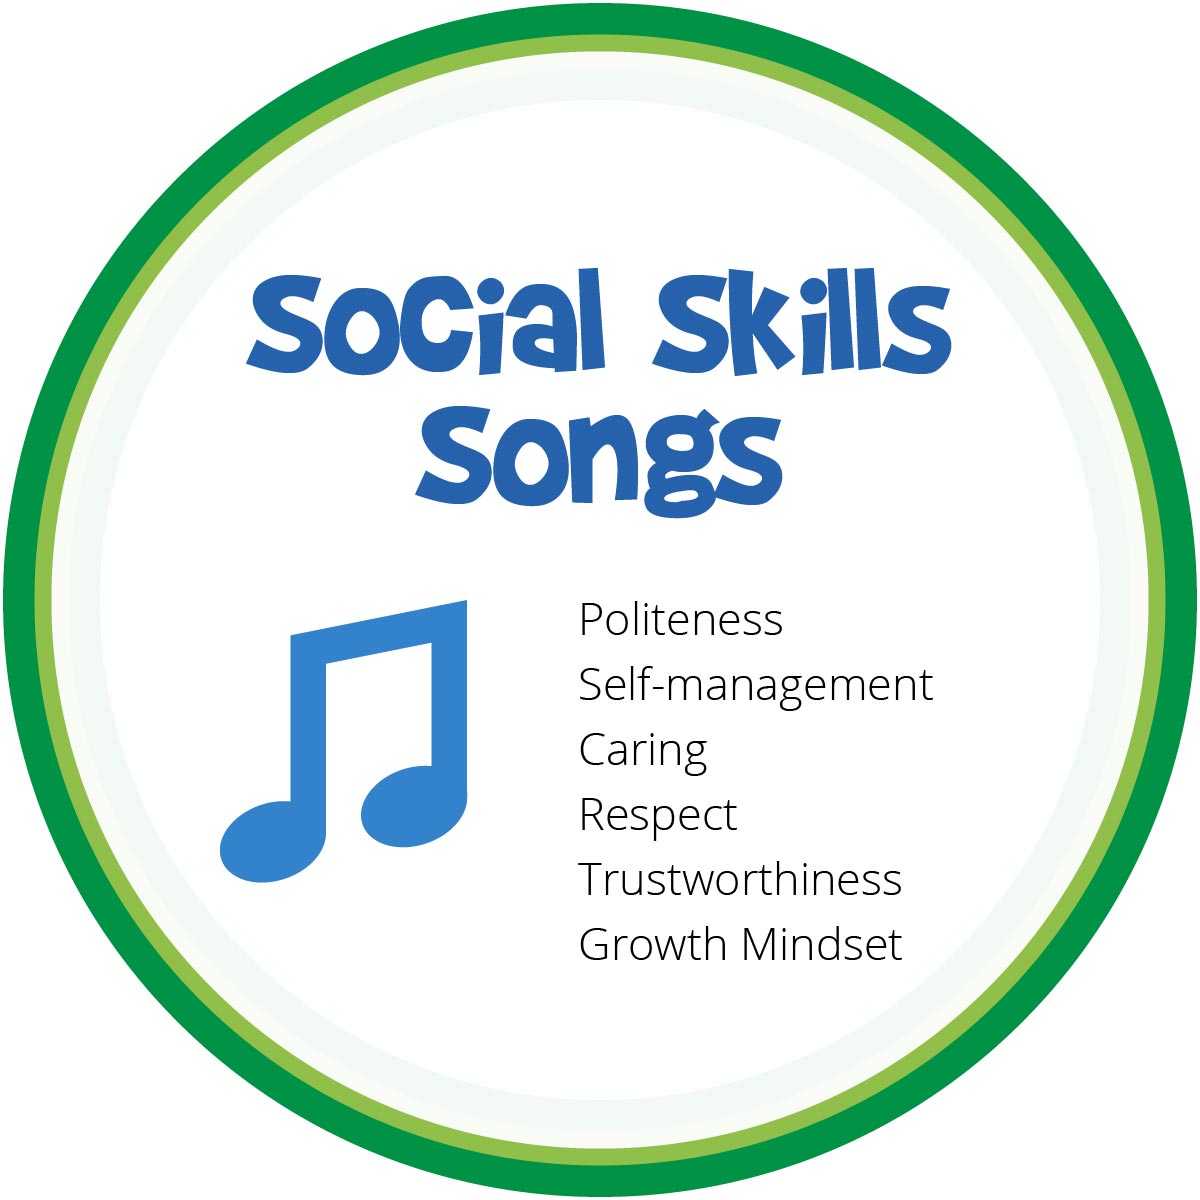 Songs for teaching social skills